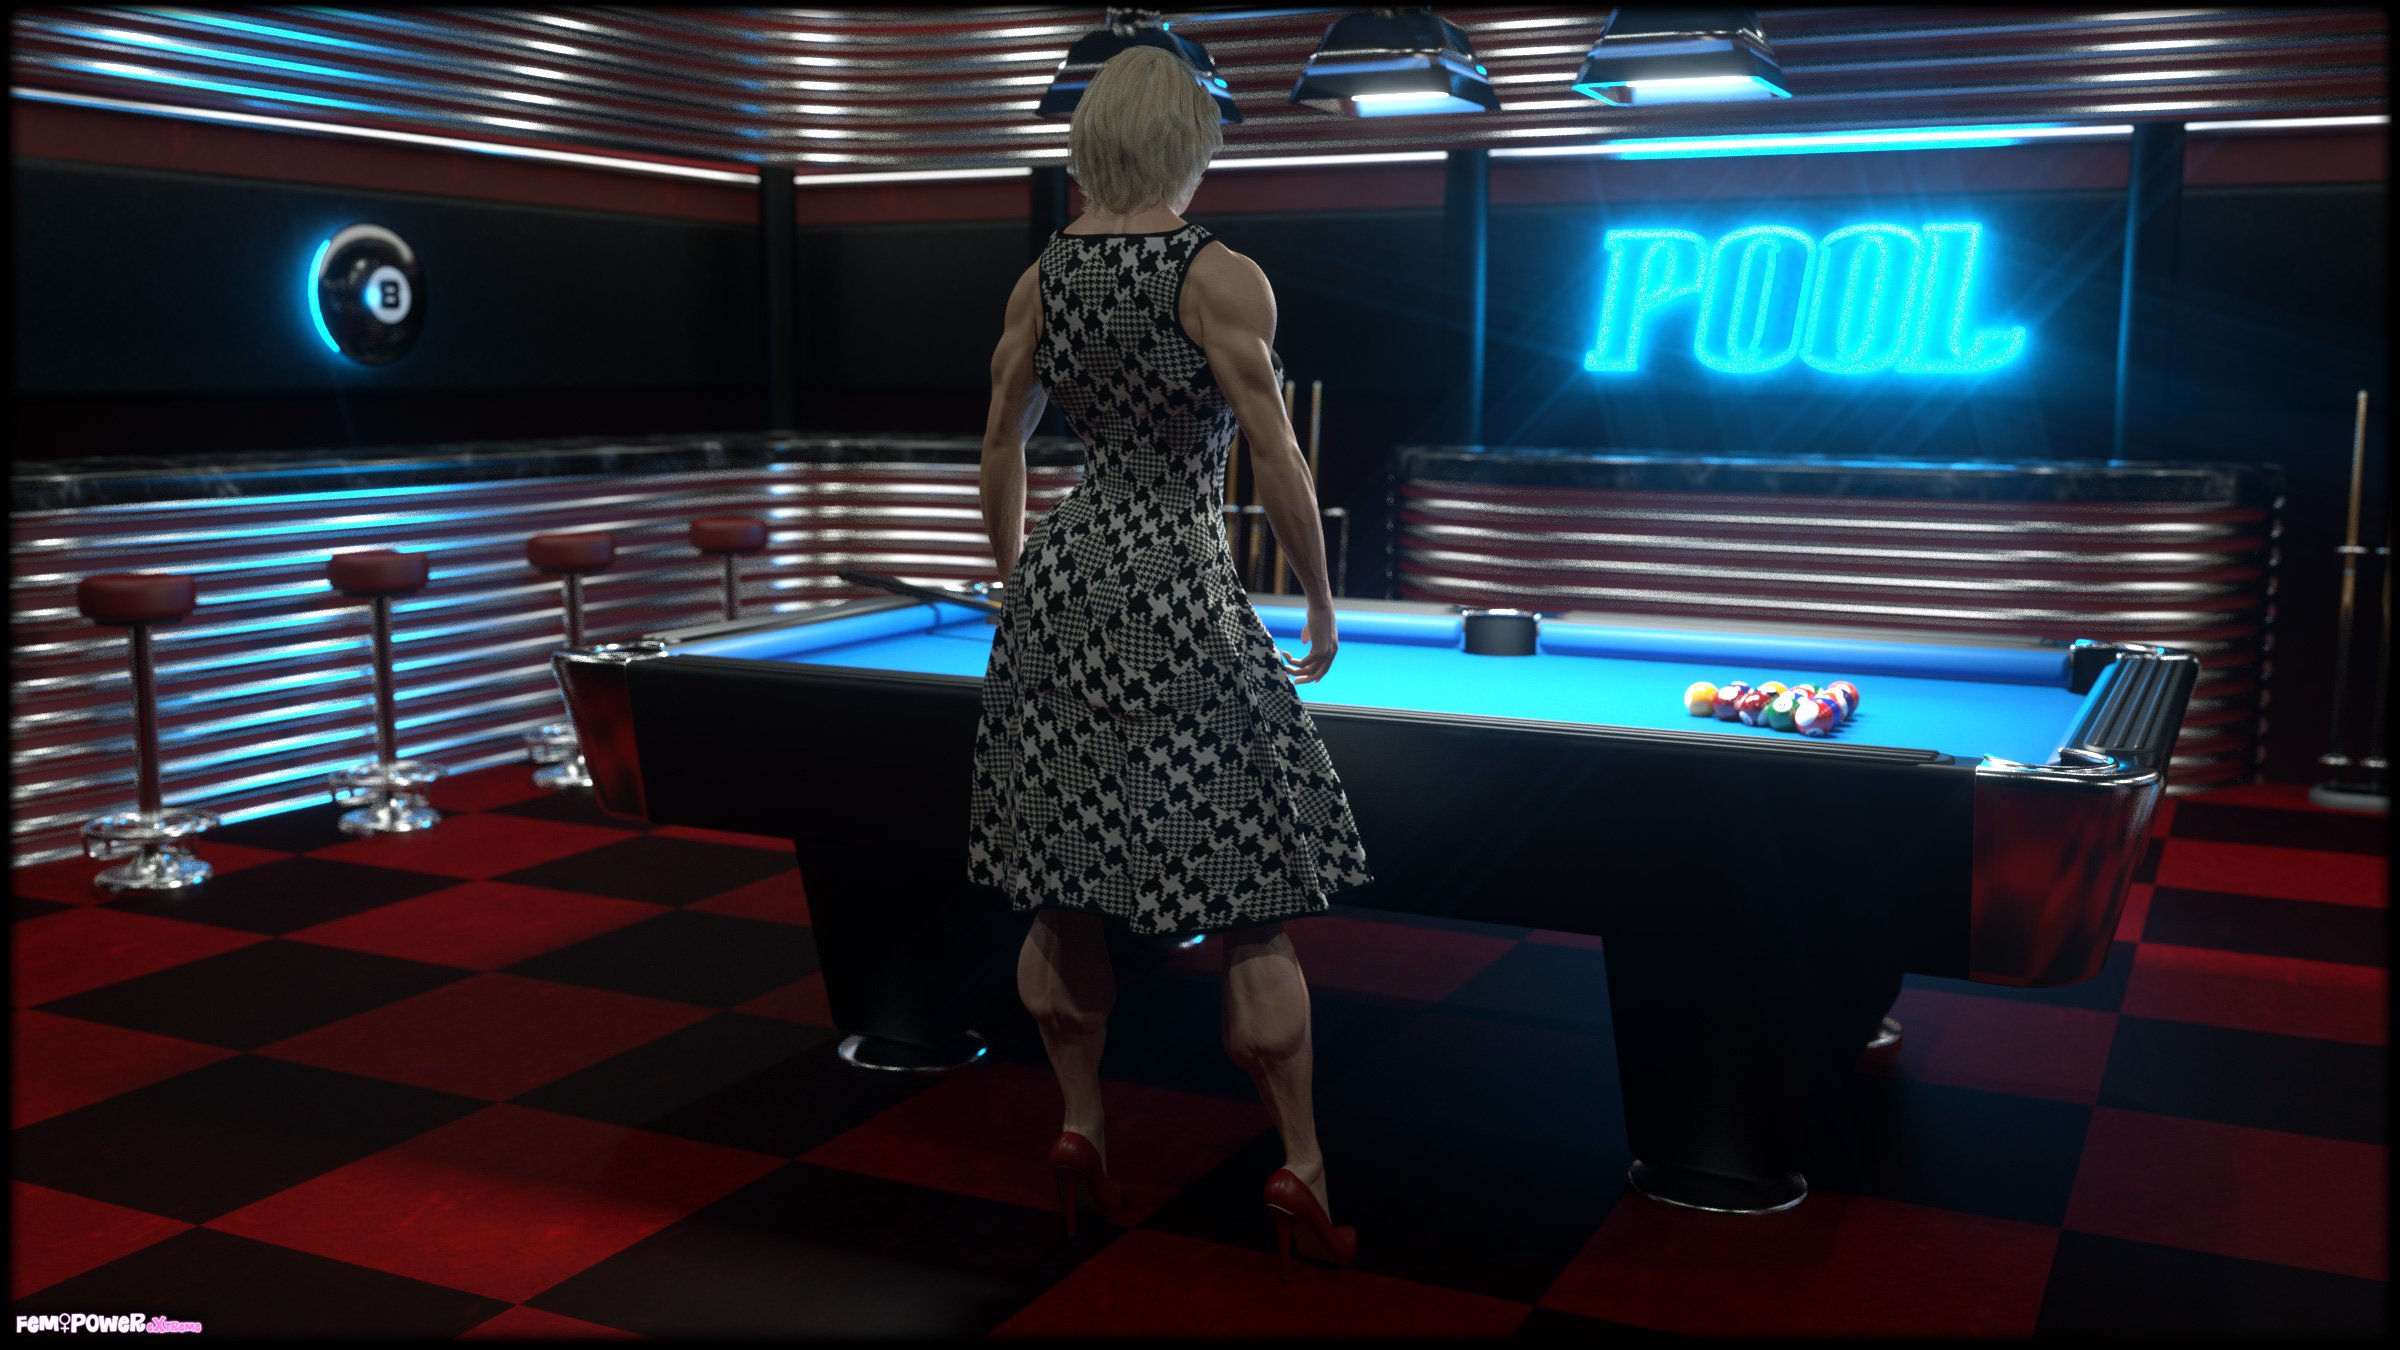 lola poolroom 01